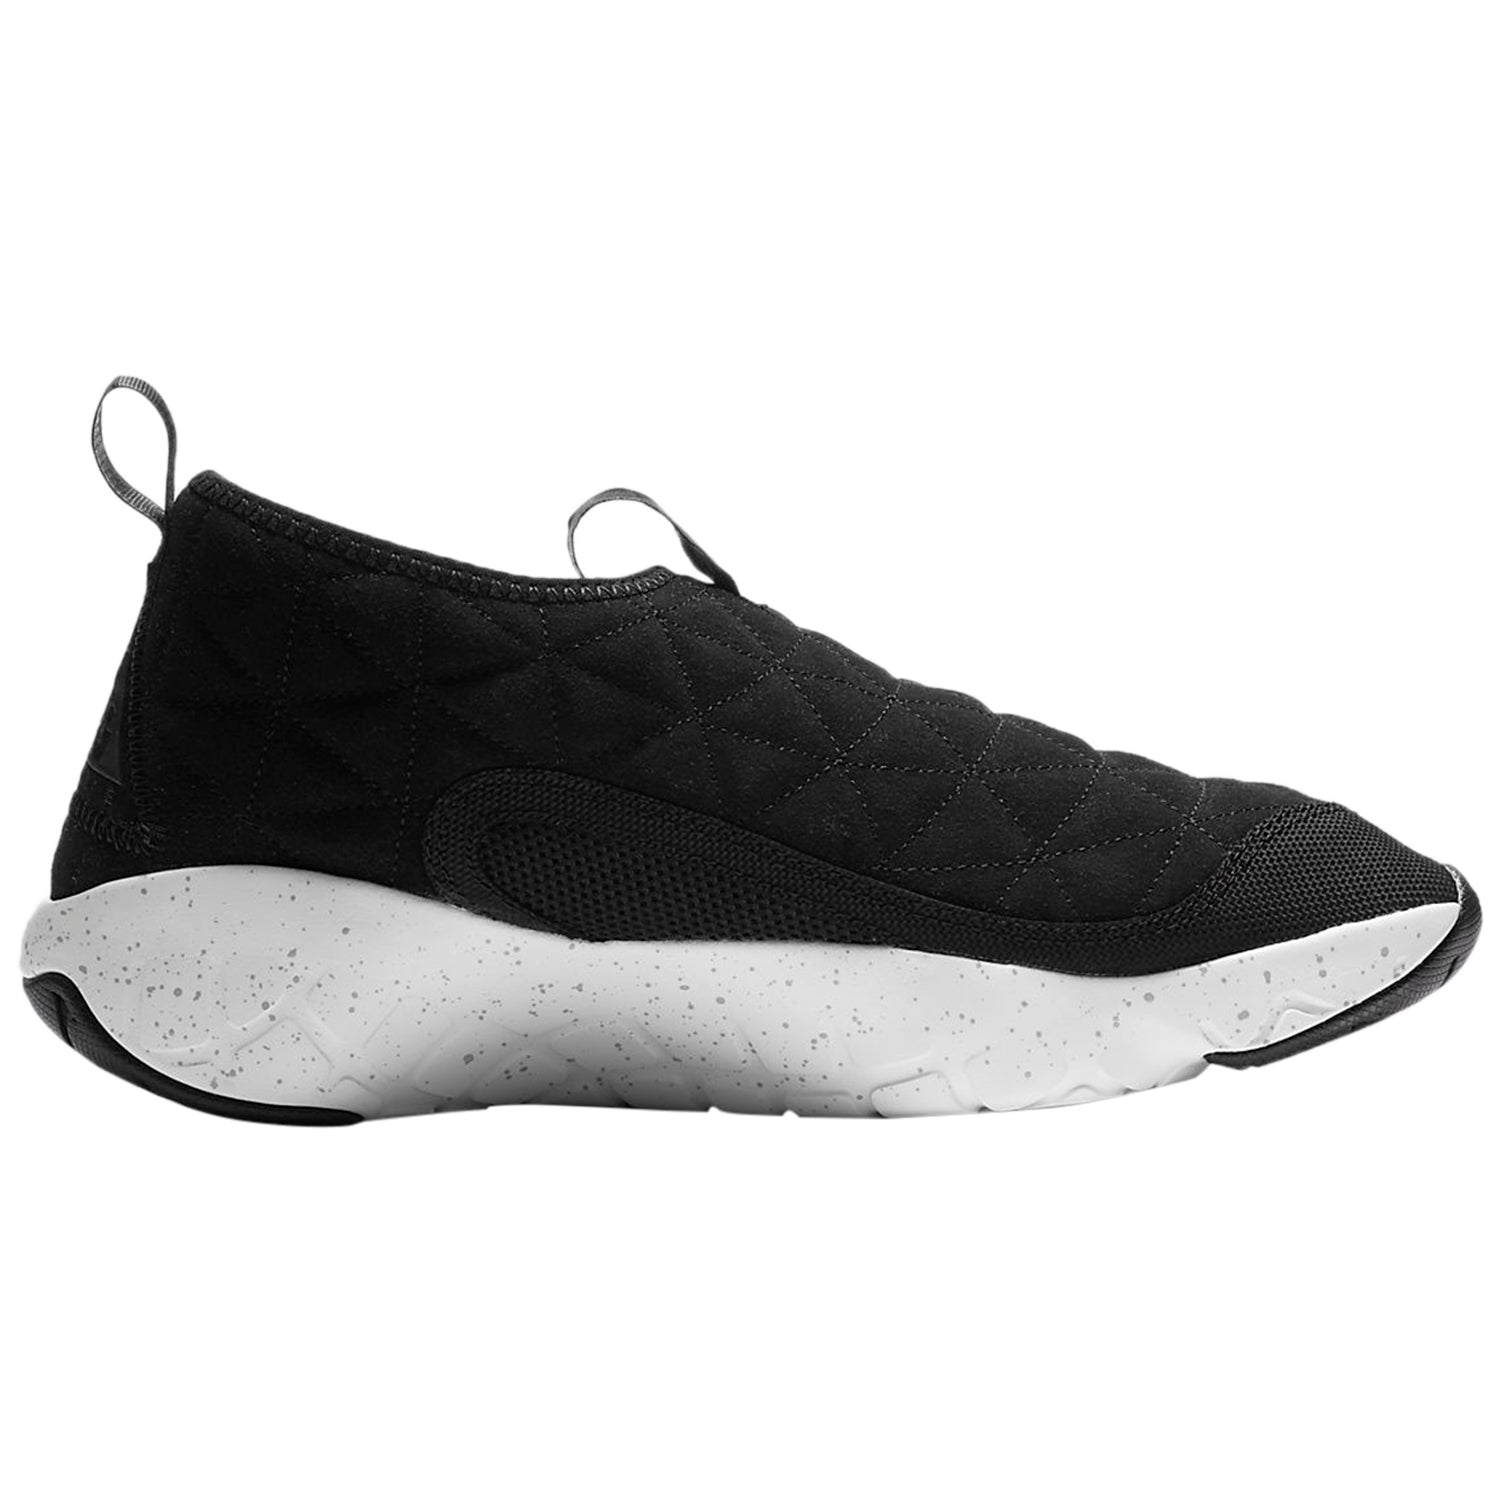 Nike ACG Moc 3.0 Leather Black